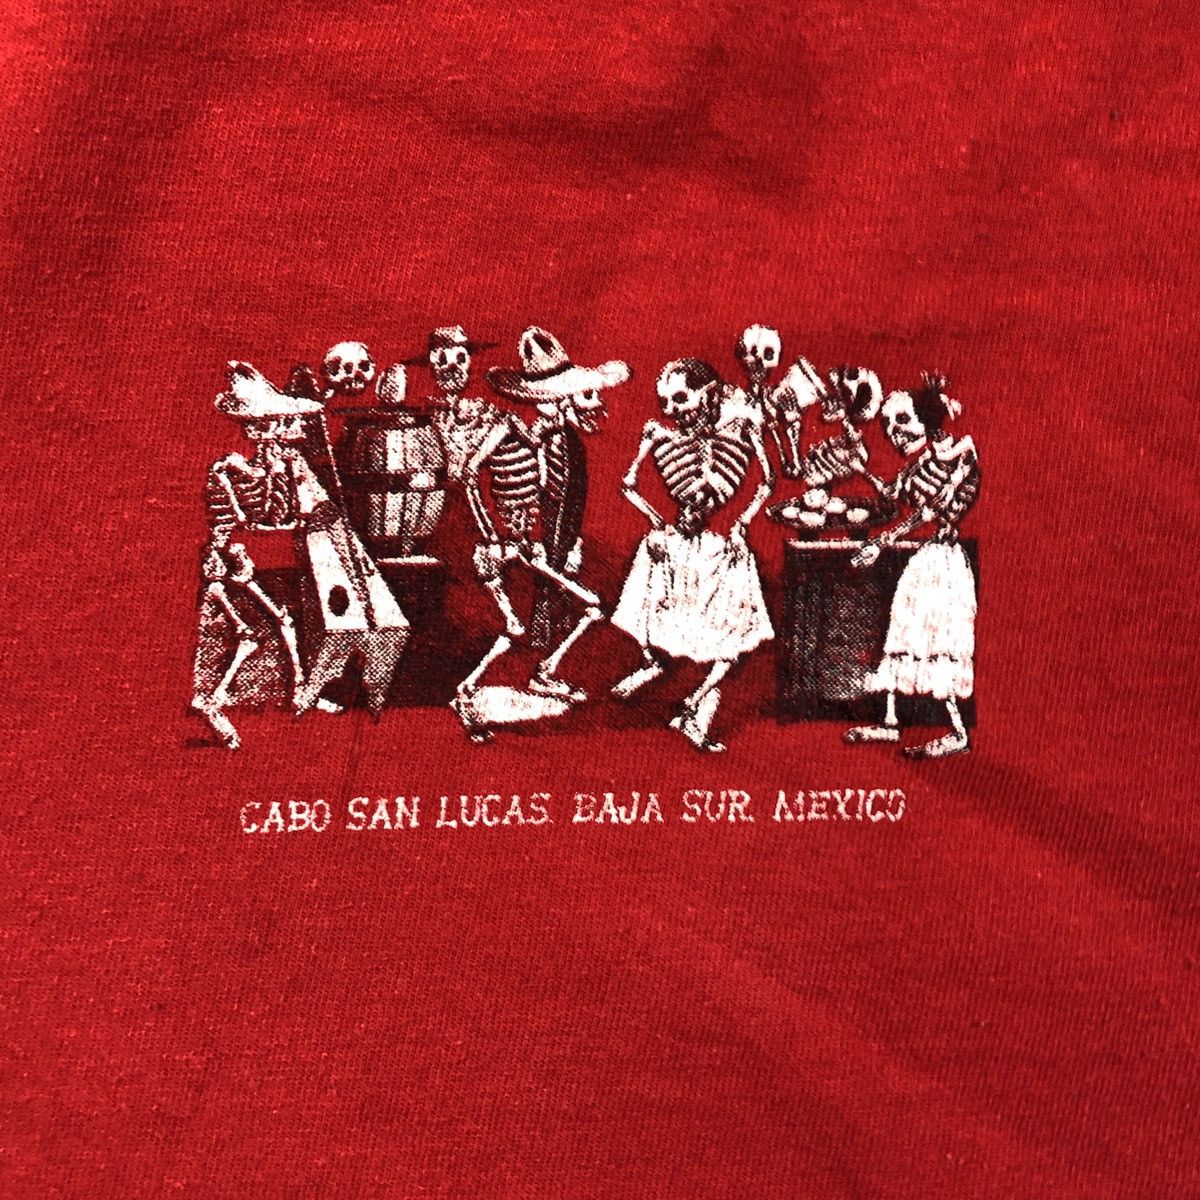 Vintage Cabo San Lucas Mexico Dancing Skeletons Souvenir Shirt Size US M / EU 48-50 / 2 - 5 Preview